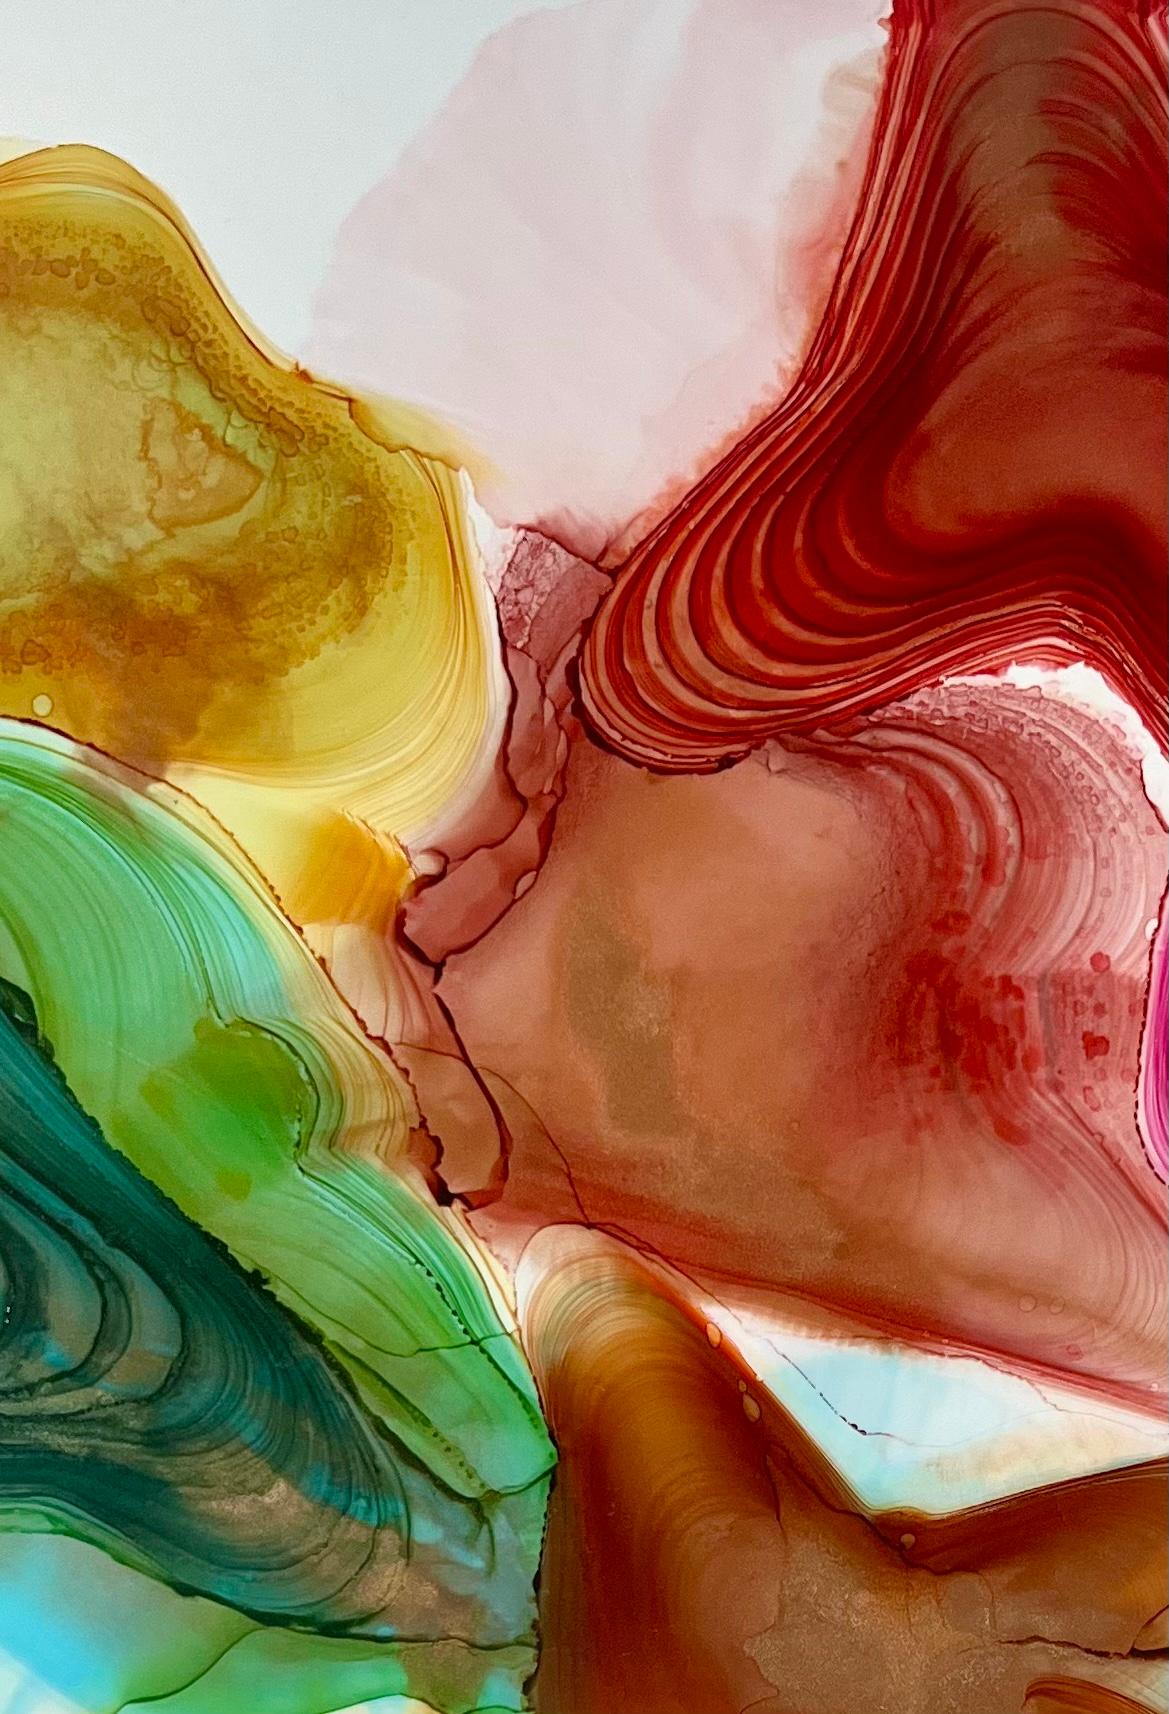 <p>Kommentare des Künstlers<br>Der Künstler Eric Wilson präsentiert ein abstraktes Bild mit energiegeladenen ringförmigen Farbformationen. Die reichen Farbschichten explodieren förmlich auf der Szene. Kräftige Ströme von Rot, Türkis und Gelb